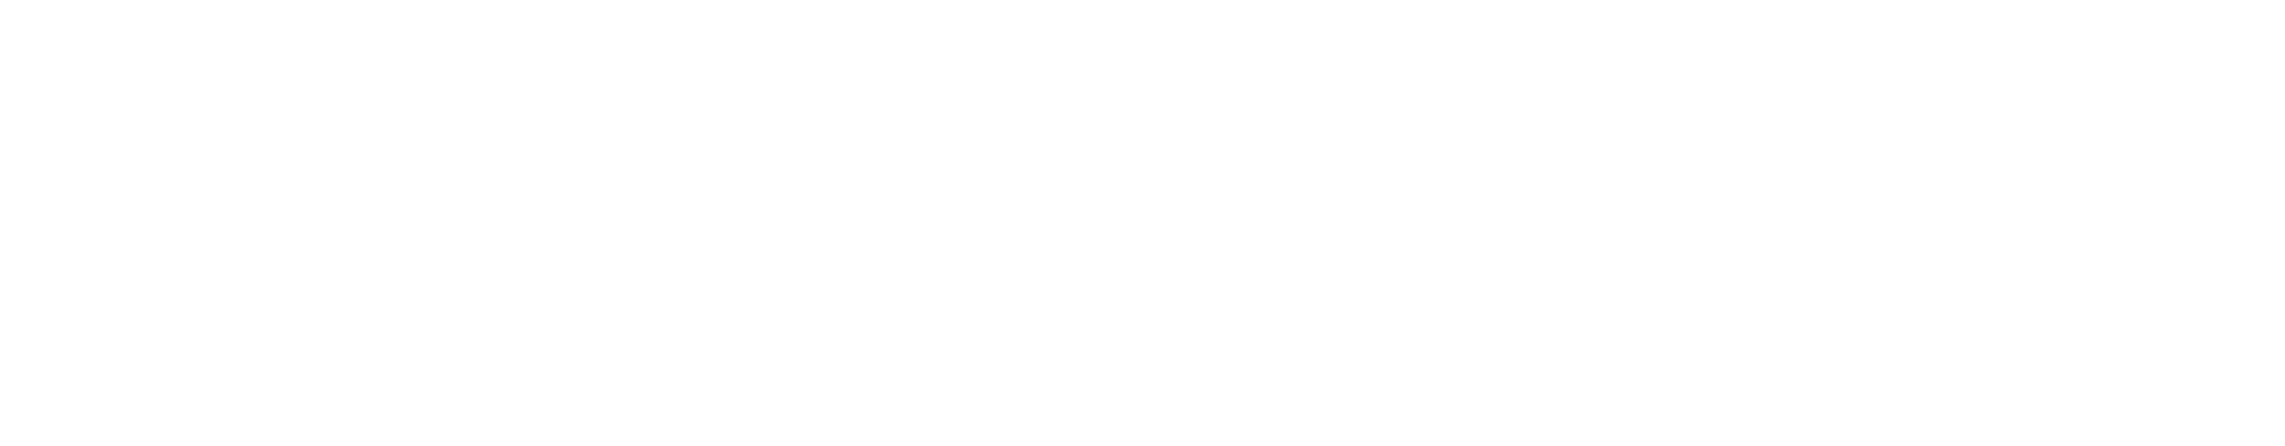 logo_salon_reklamy_2021_kor_white.png